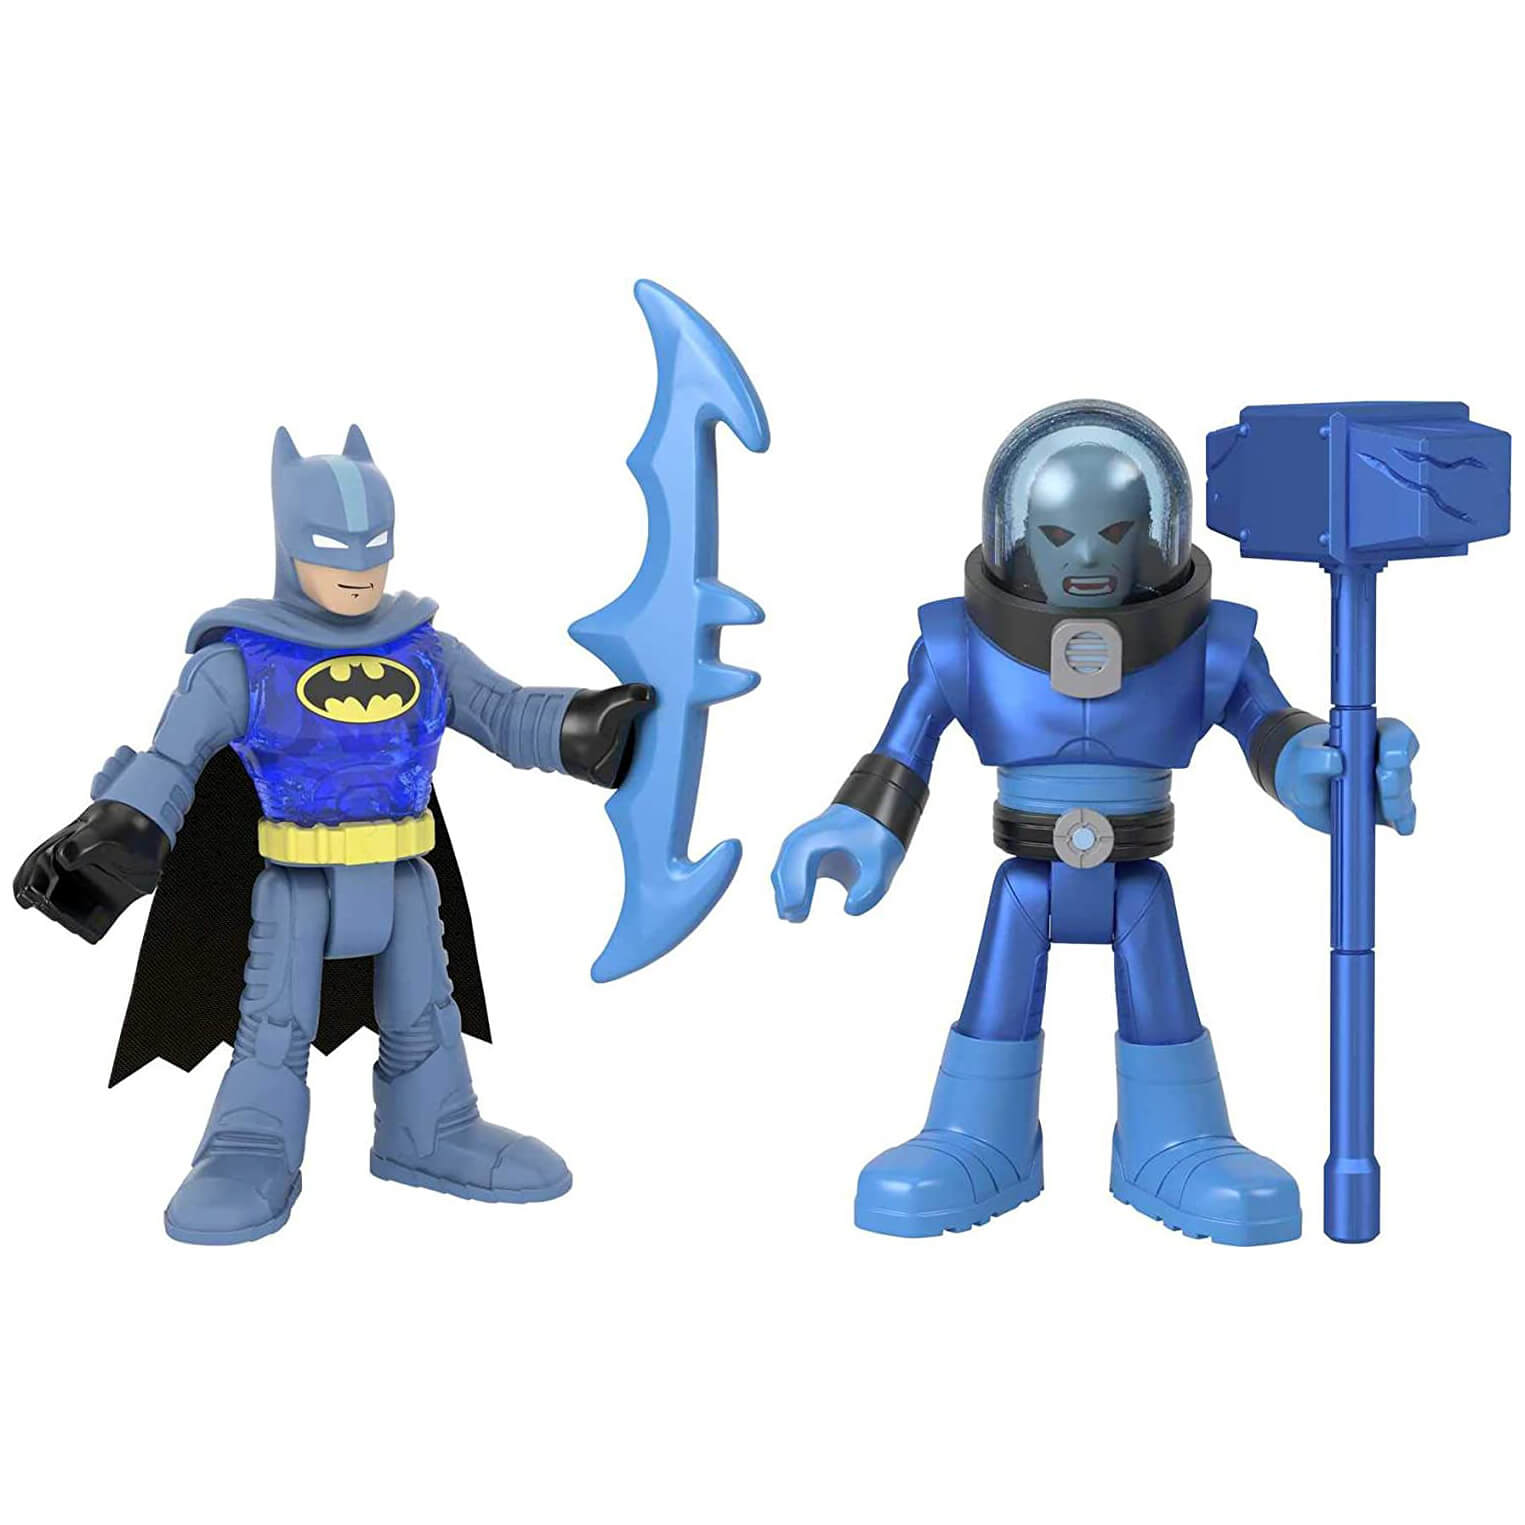 DC Super Friends Imaginext Batman & Mr. Freeze Figures